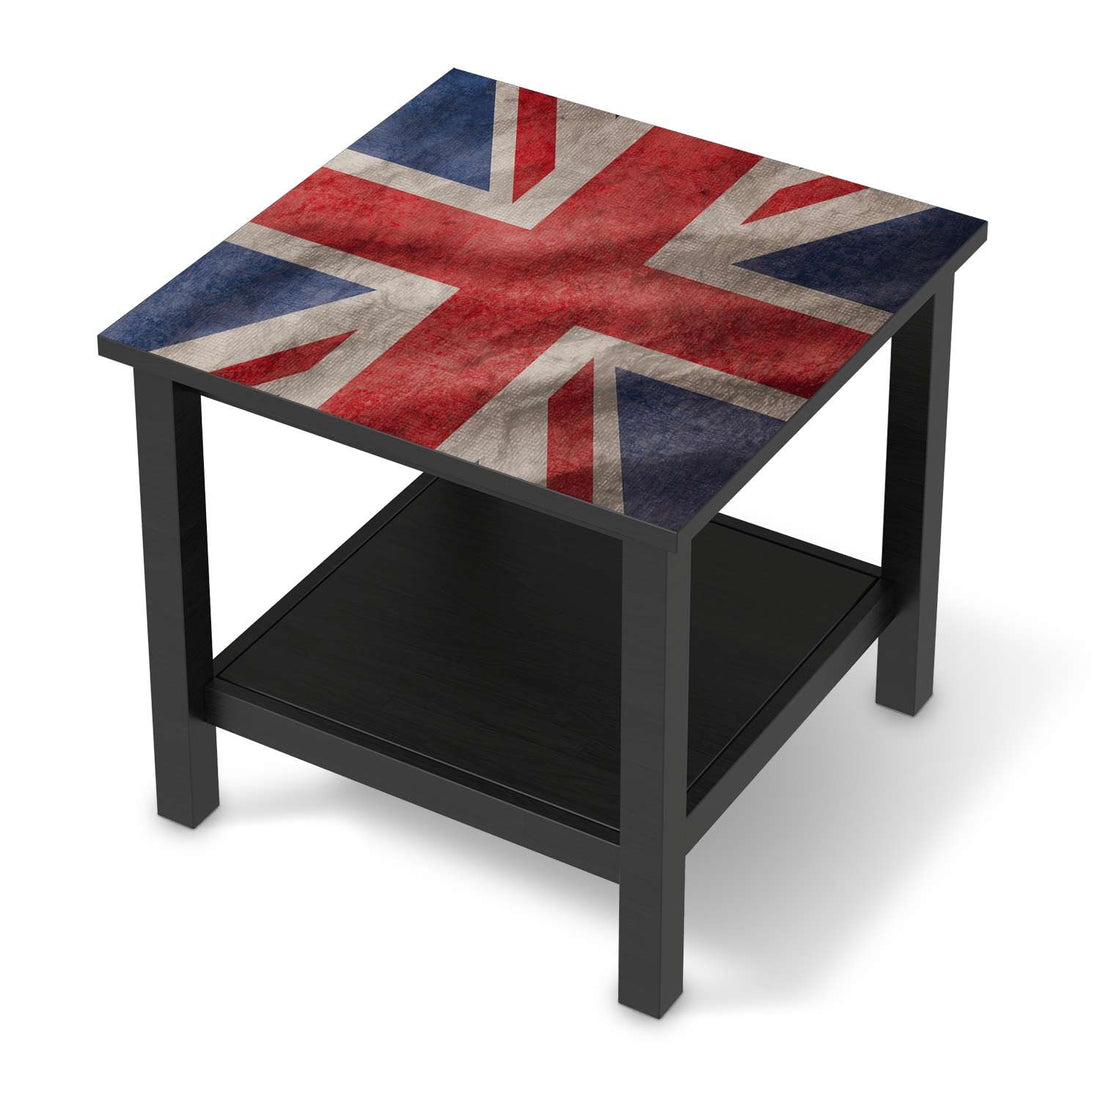 Möbel Klebefolie Union Jack - IKEA Hemnes Beistelltisch 55x55 cm - schwarz